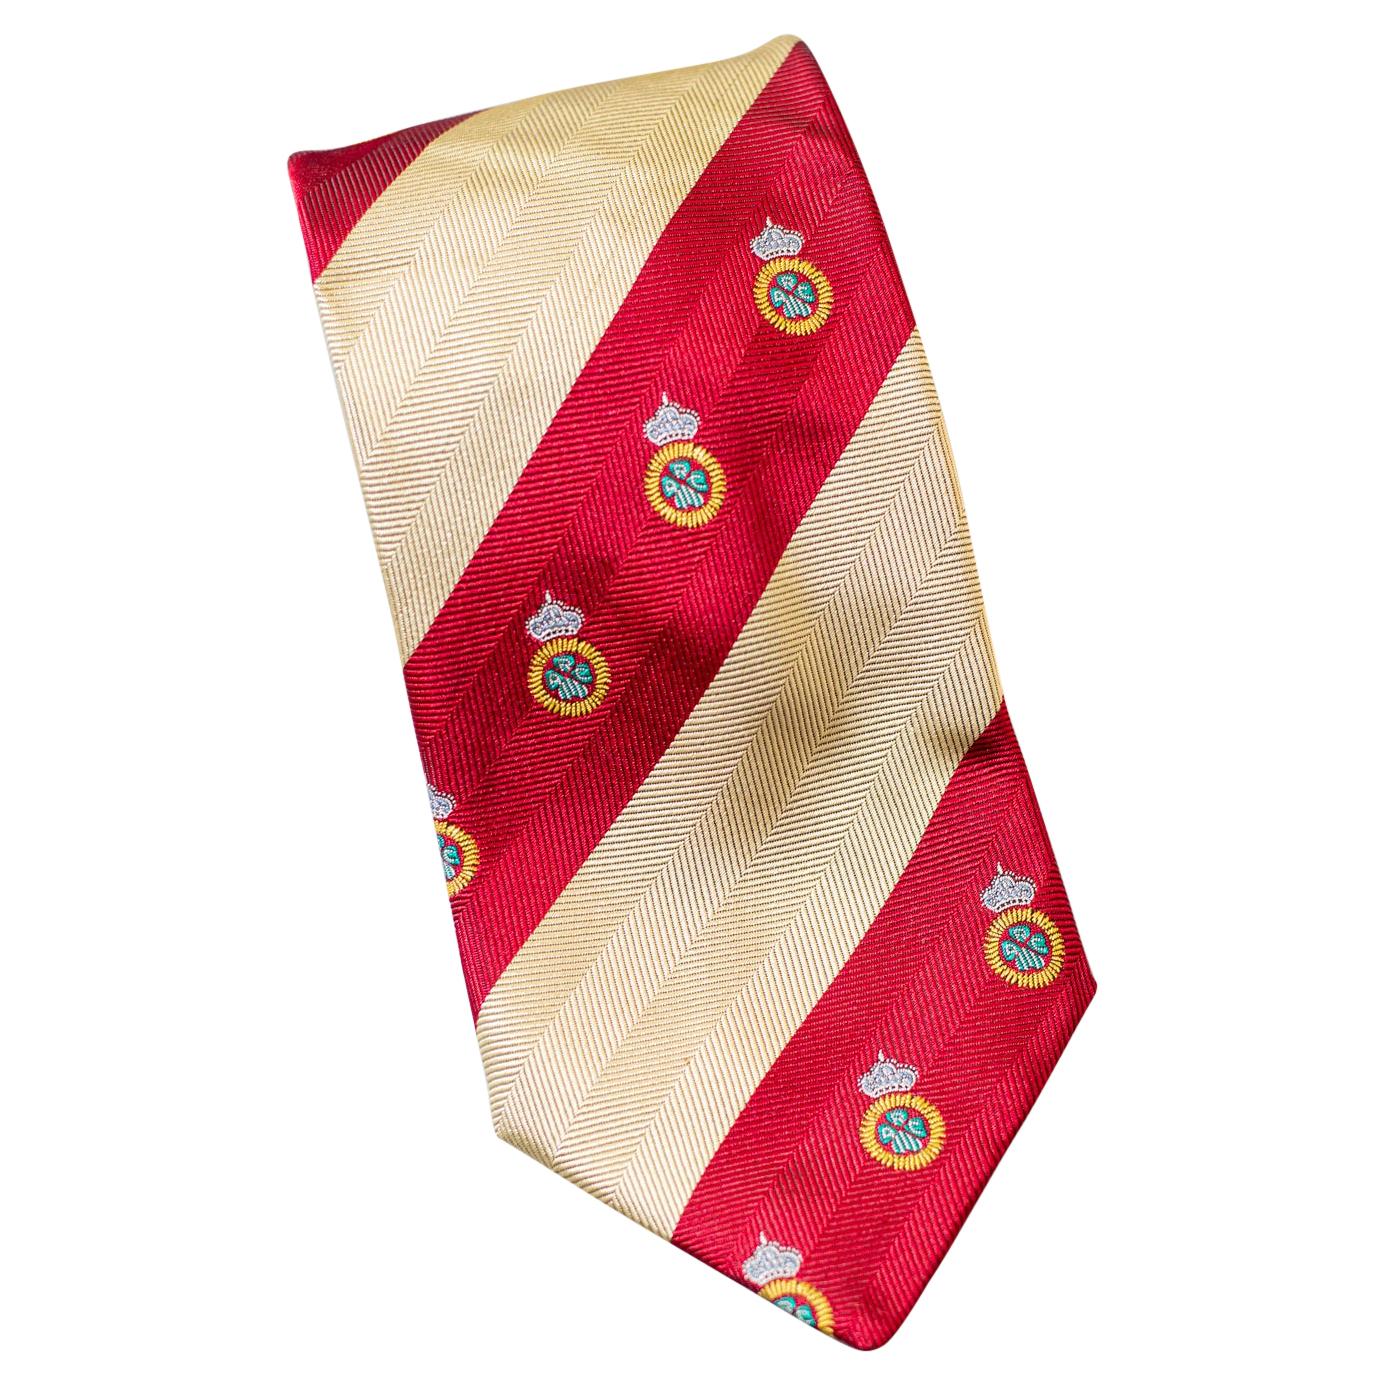 Domenico Basile cravate vintage à rayures entièrement en soie